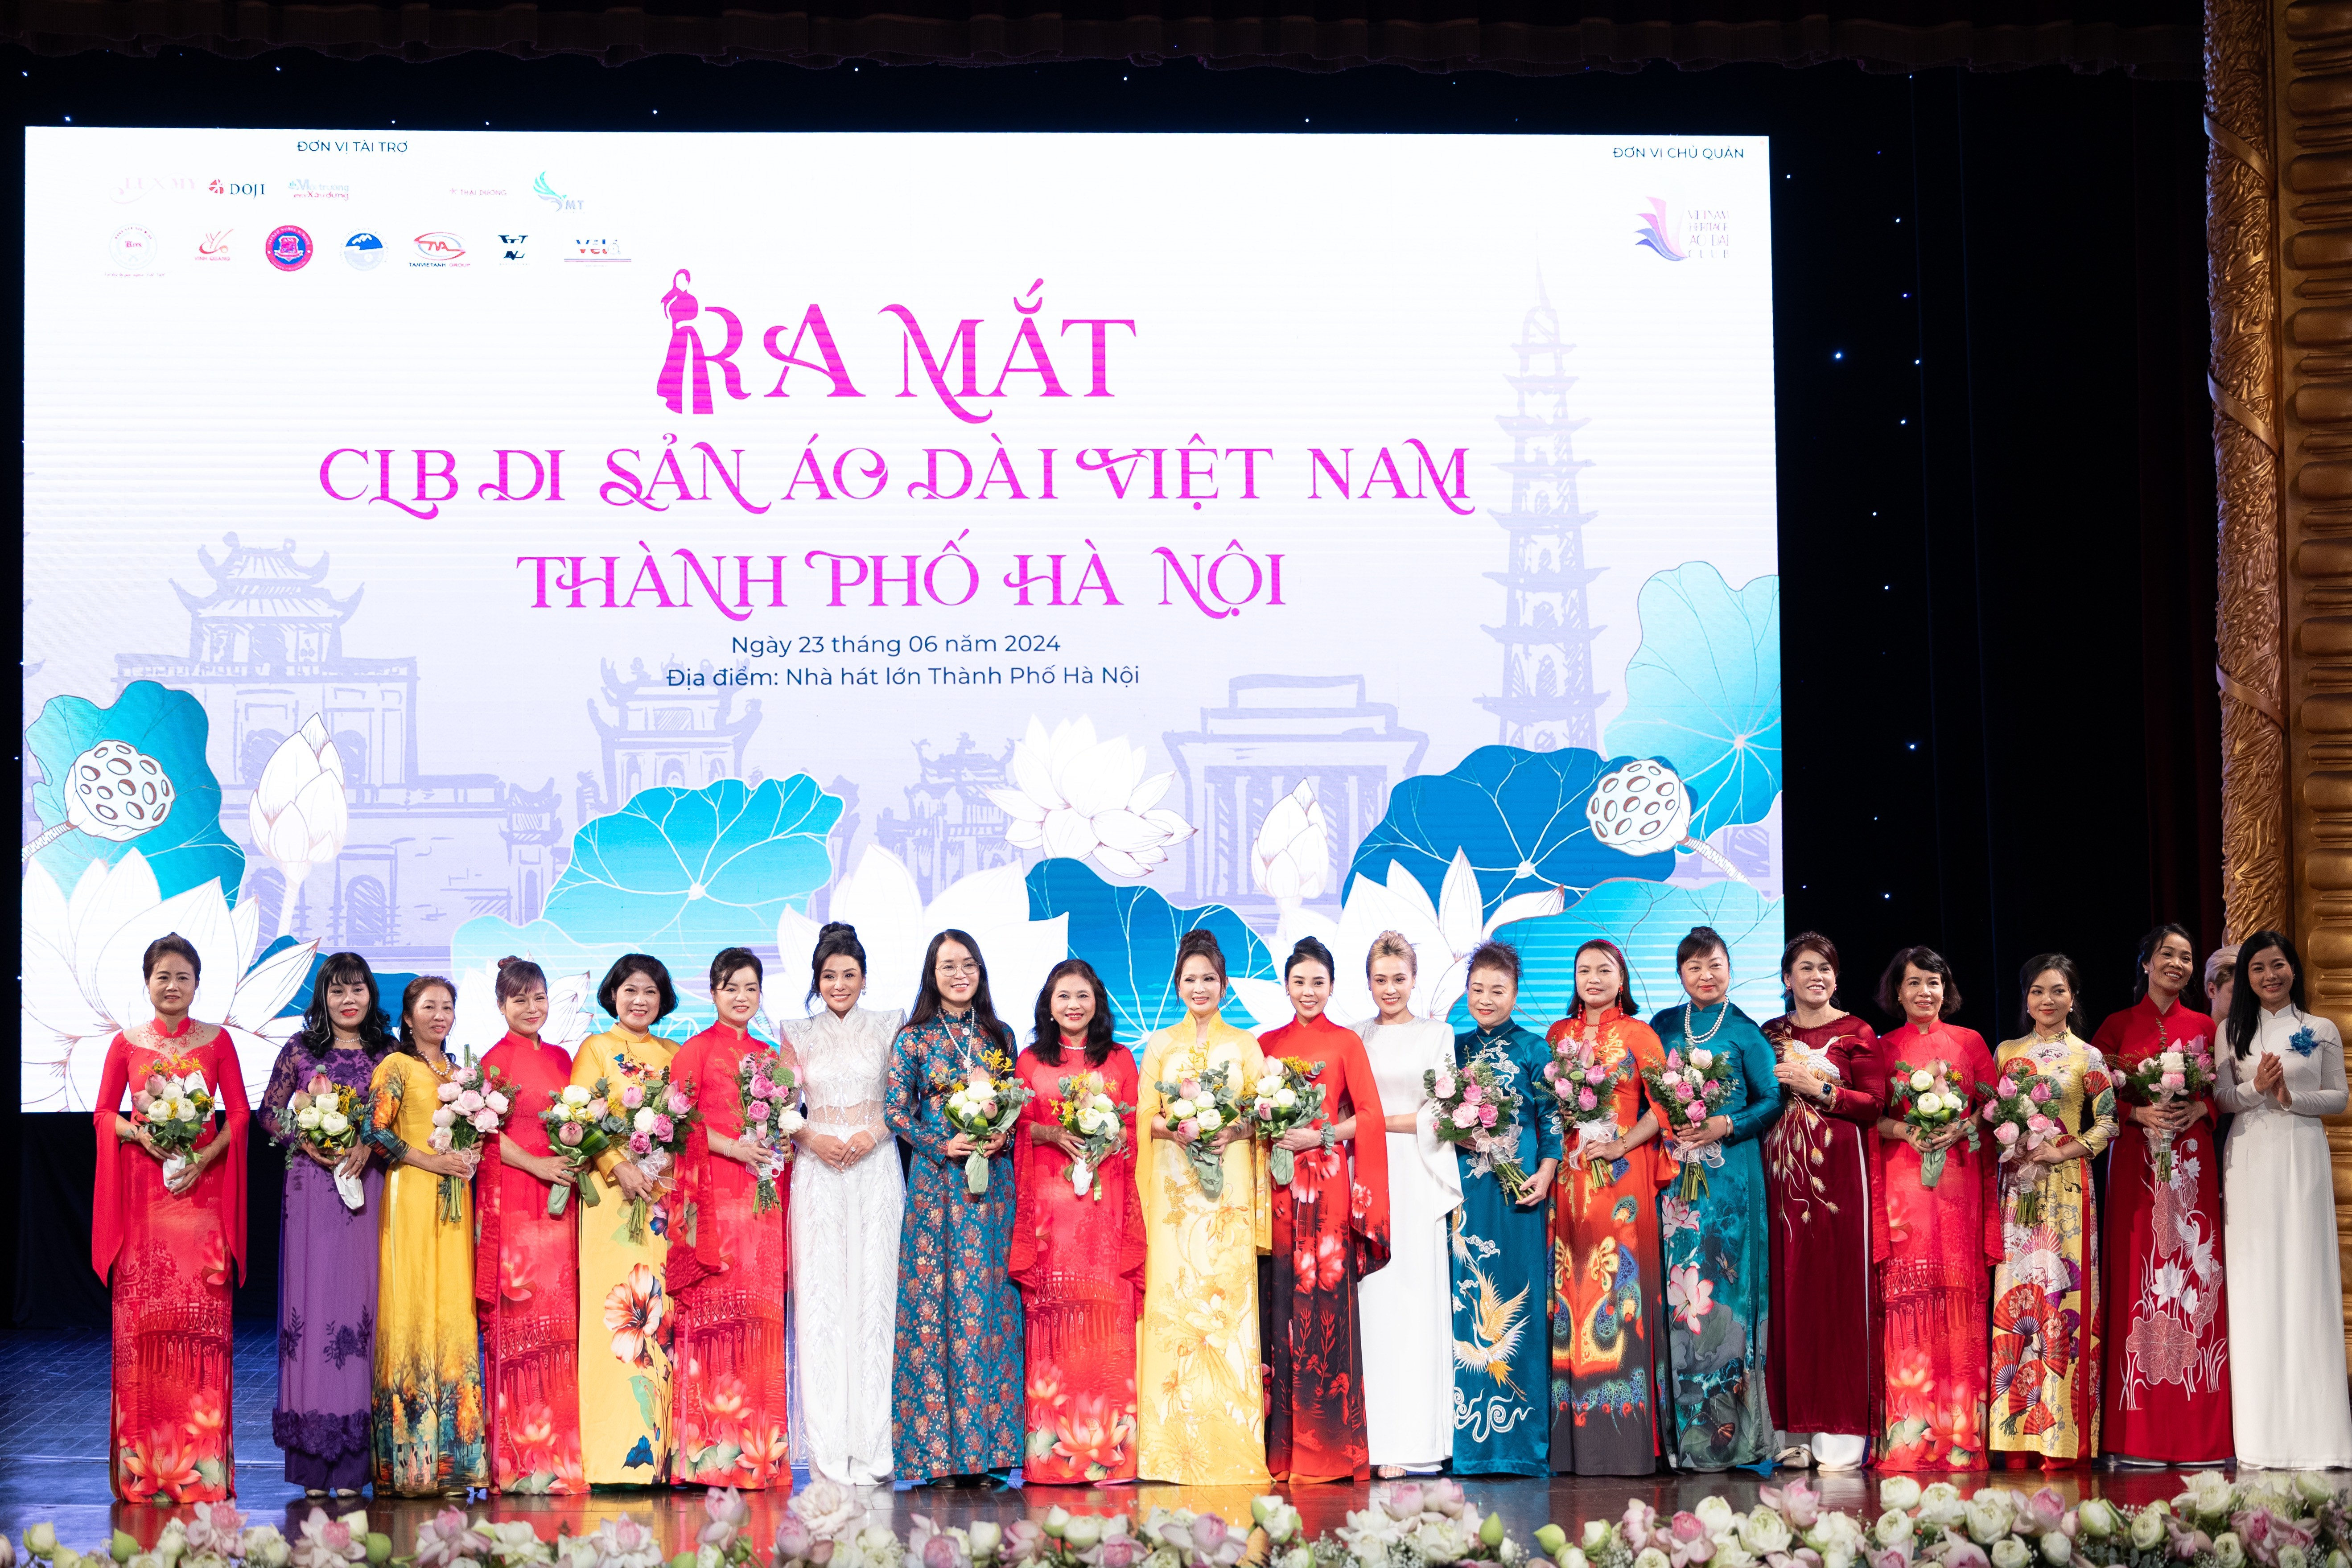 Chính thức ra mắt Câu lạc bộ Di sản Áo dài Việt Nam thành phố Hà Nội